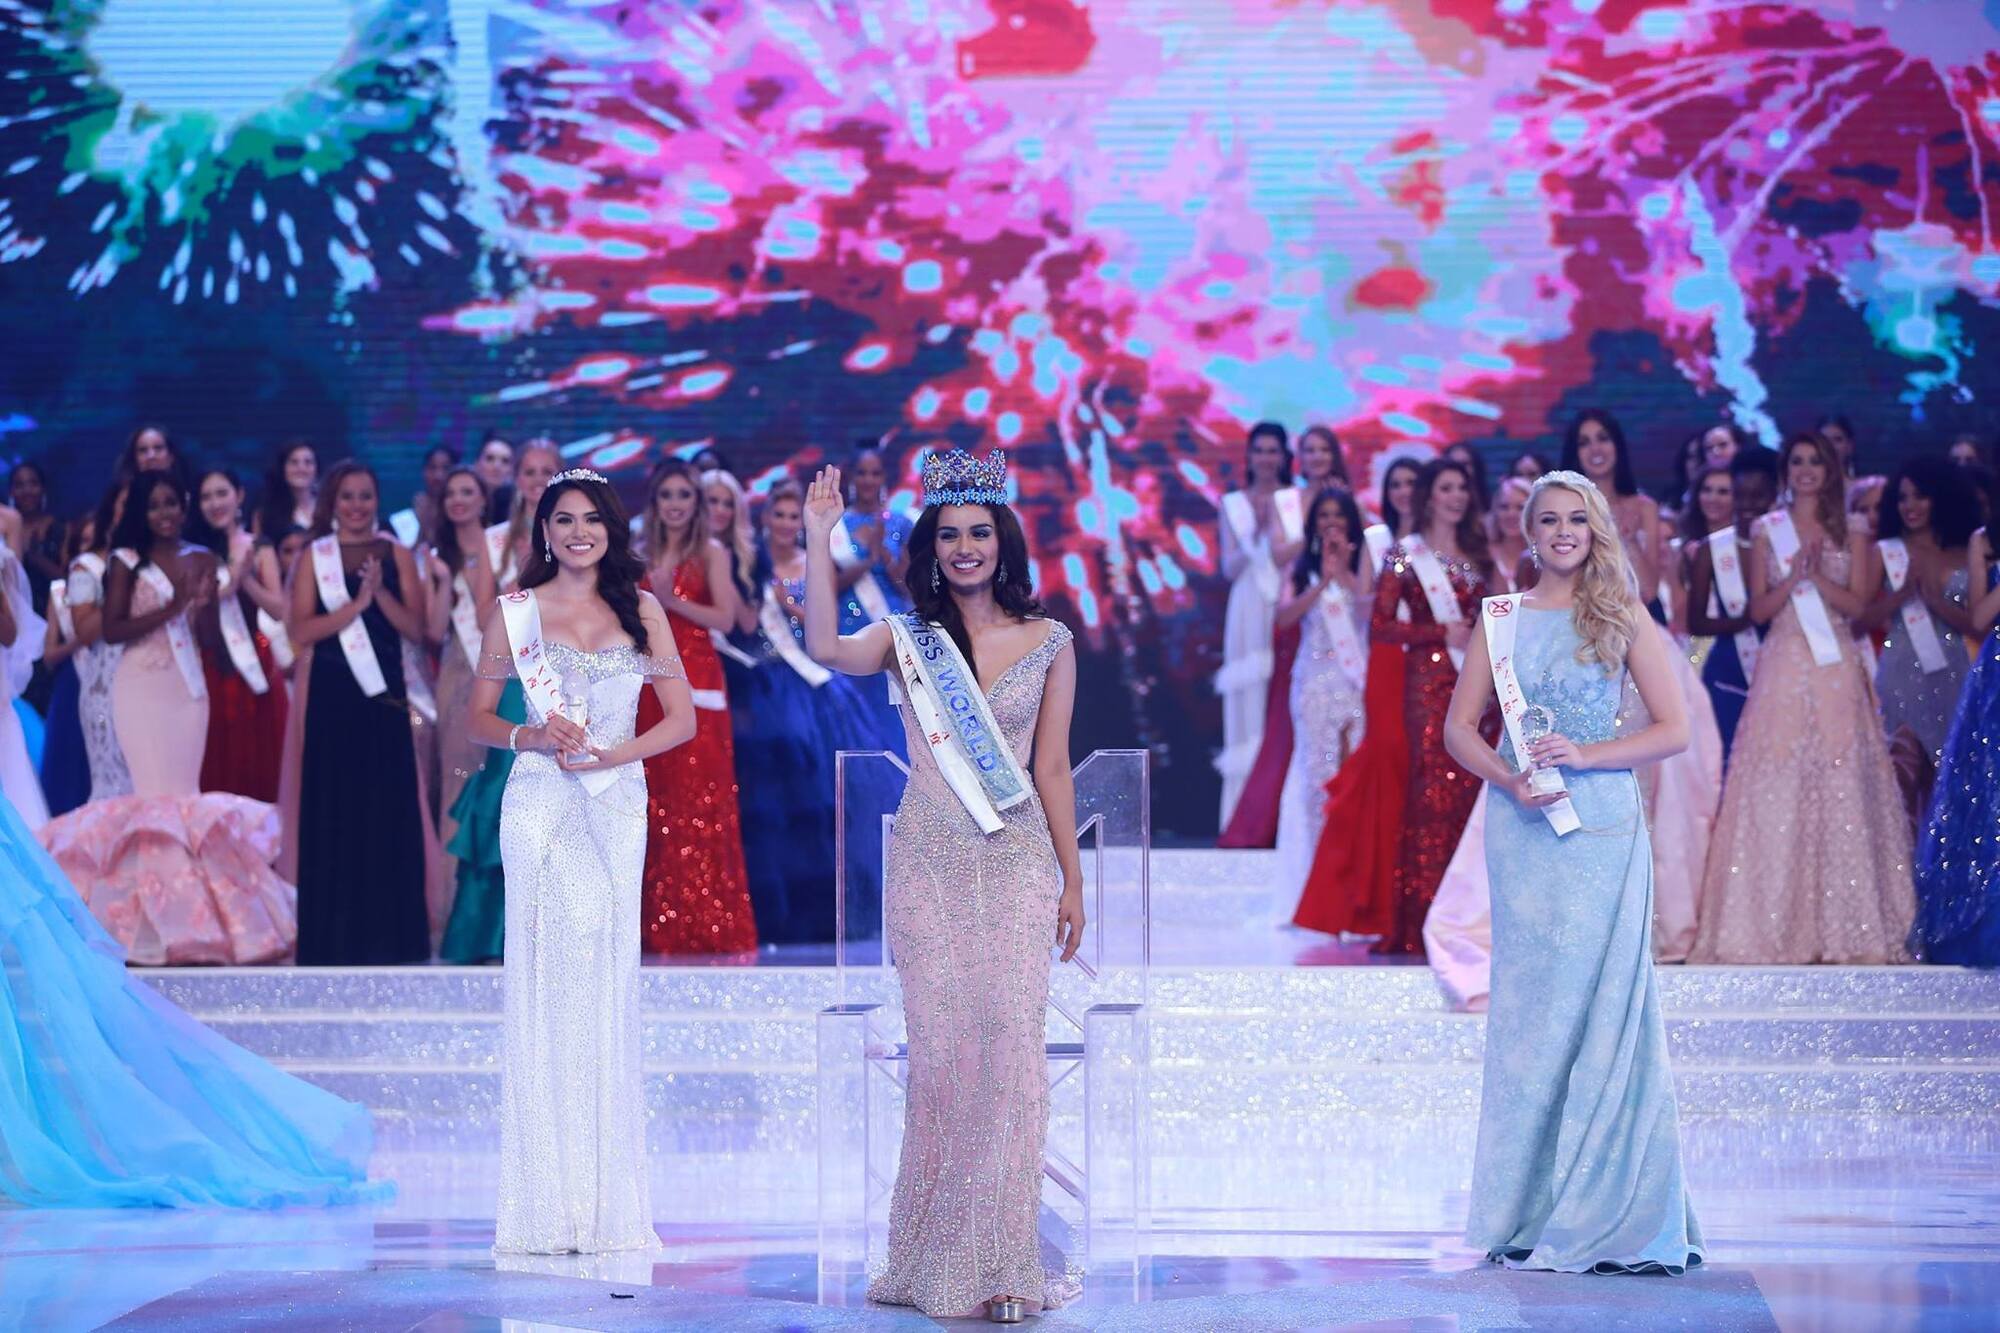 "Мисс Мира-2017": самые яркие моменты конкурса